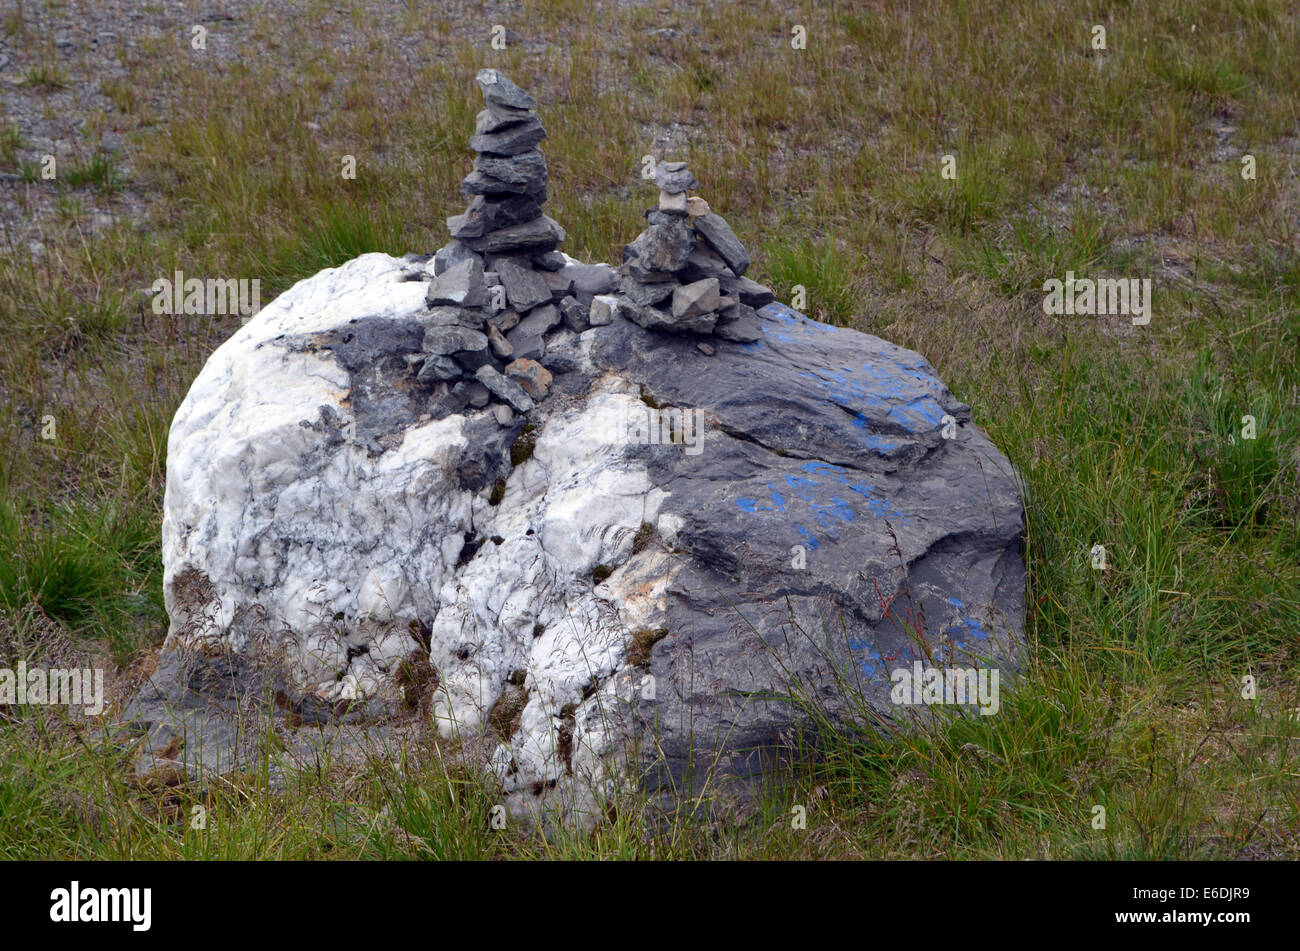 Einem mysteriösen Steinhaufen, natürlich von hand gebaut, scheint eine Sami-Tradition zu sein. Man findet sie überall auf der Welt. Stockfoto